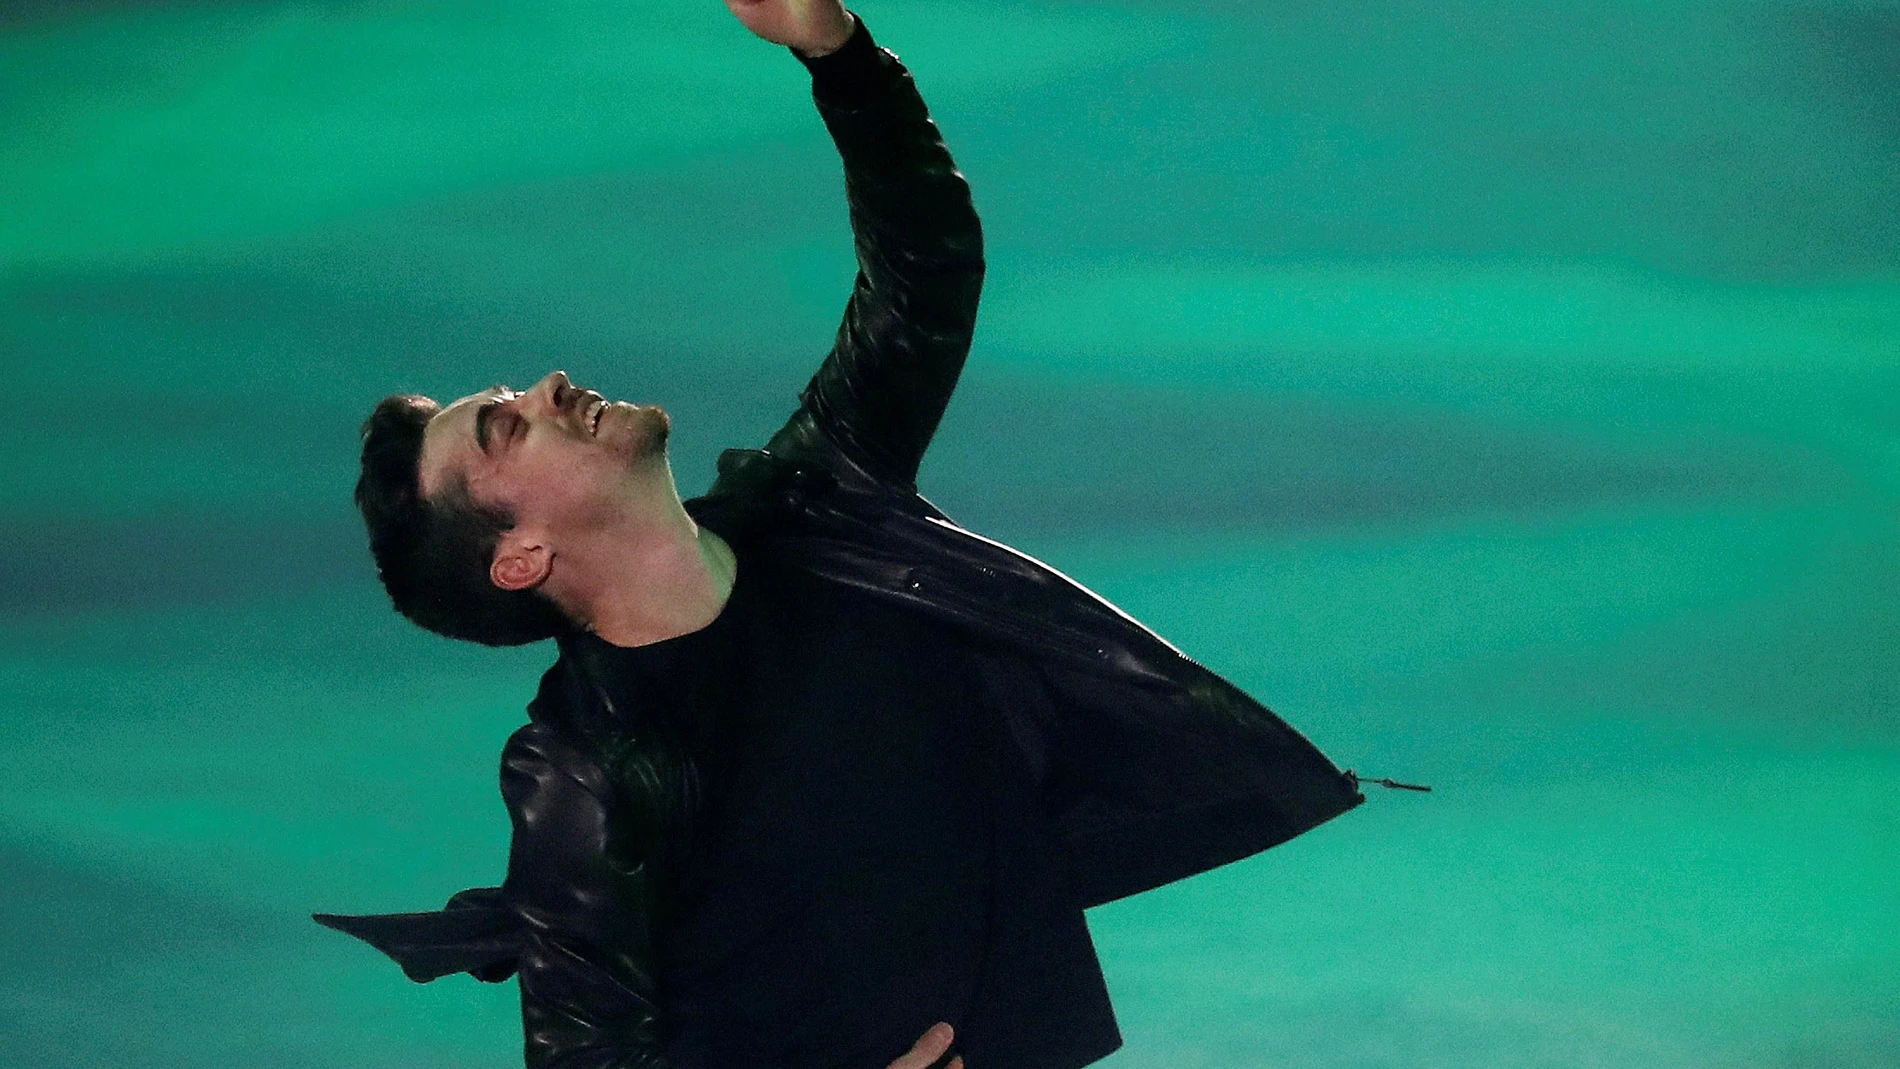 El patinador Javier Fernández durante el ensayo general del espectáculo "Revolution on Ice" en el Palacio Vistalegre de Madrid.